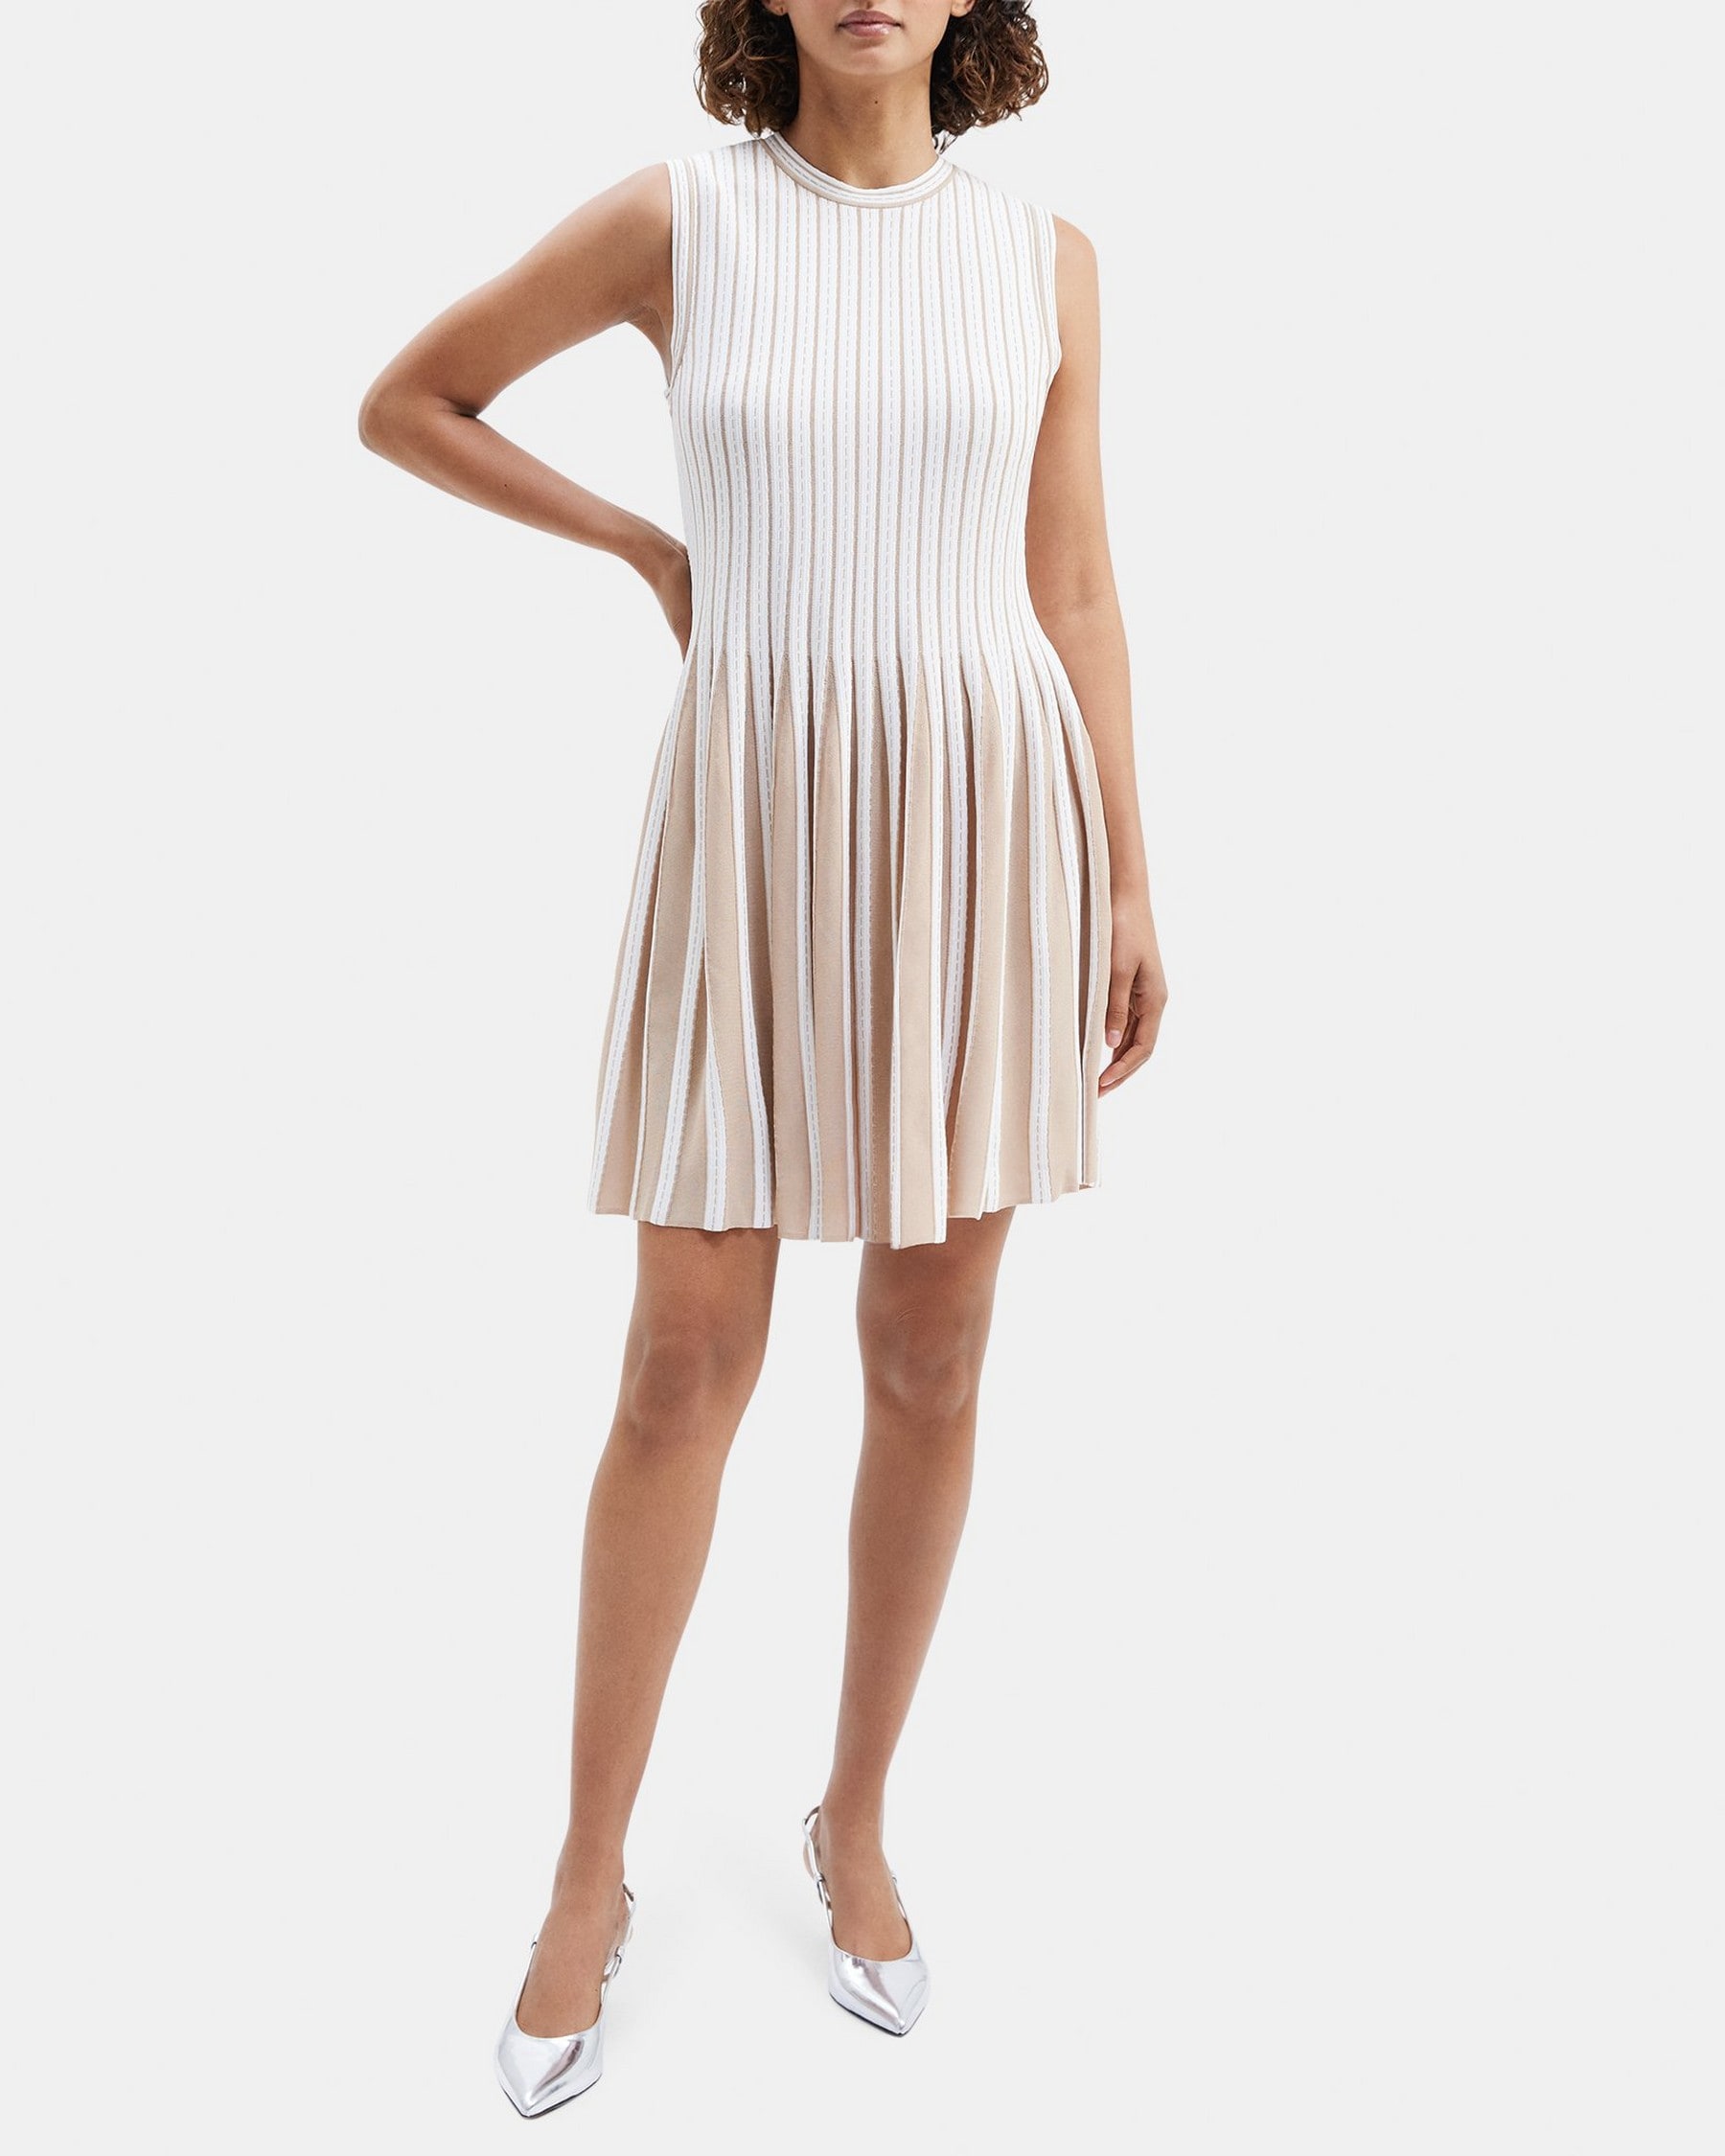 띠어리 Theory Striped Pleat Dress in Compact Stretch Knit,WARM KHAKI/POWDER